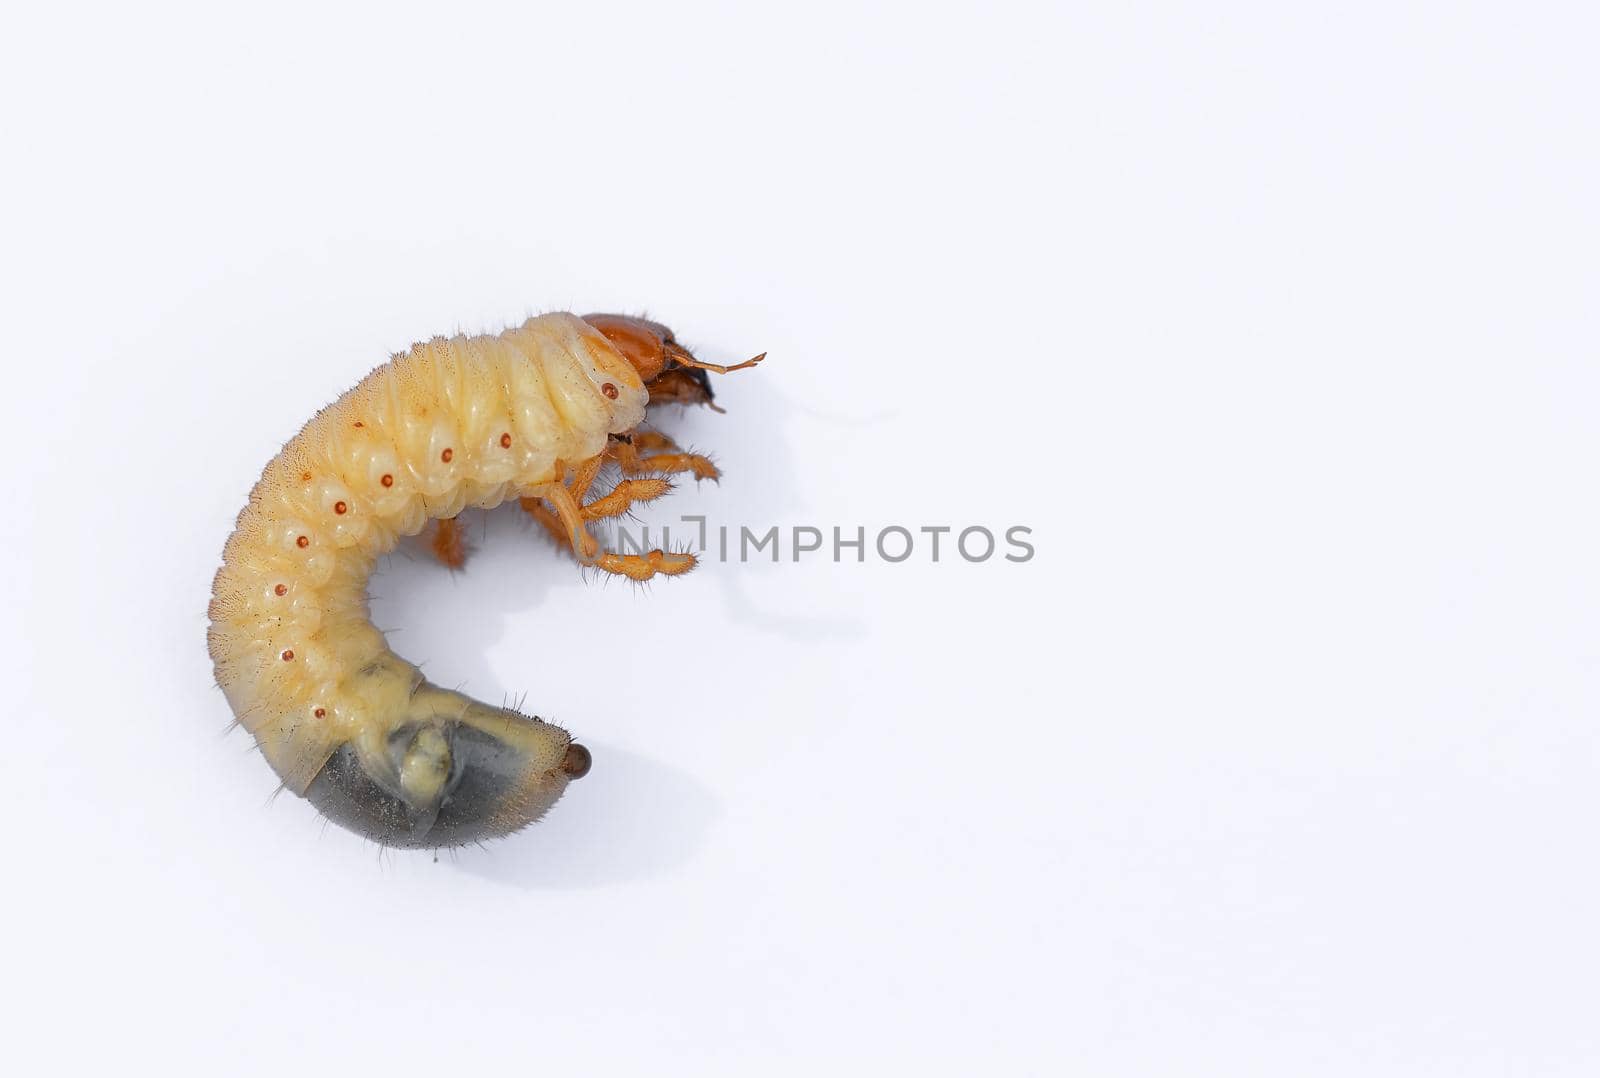 Beetle grub isolated on white background. Coconut rhinoceros beetle. Larva on white background.